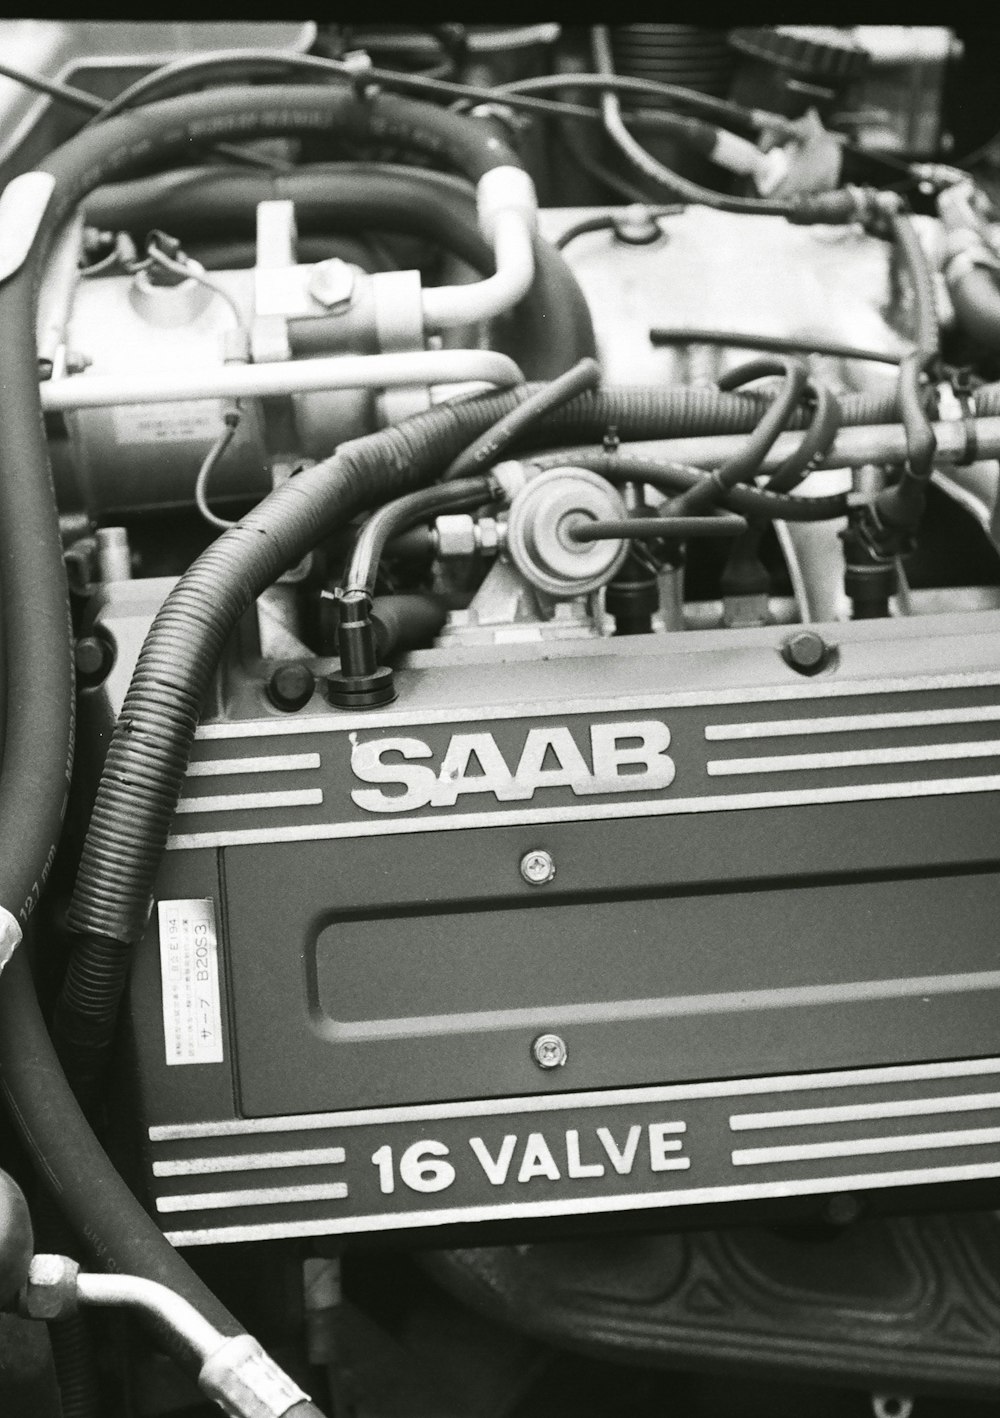 Una foto en blanco y negro de un motor Saab